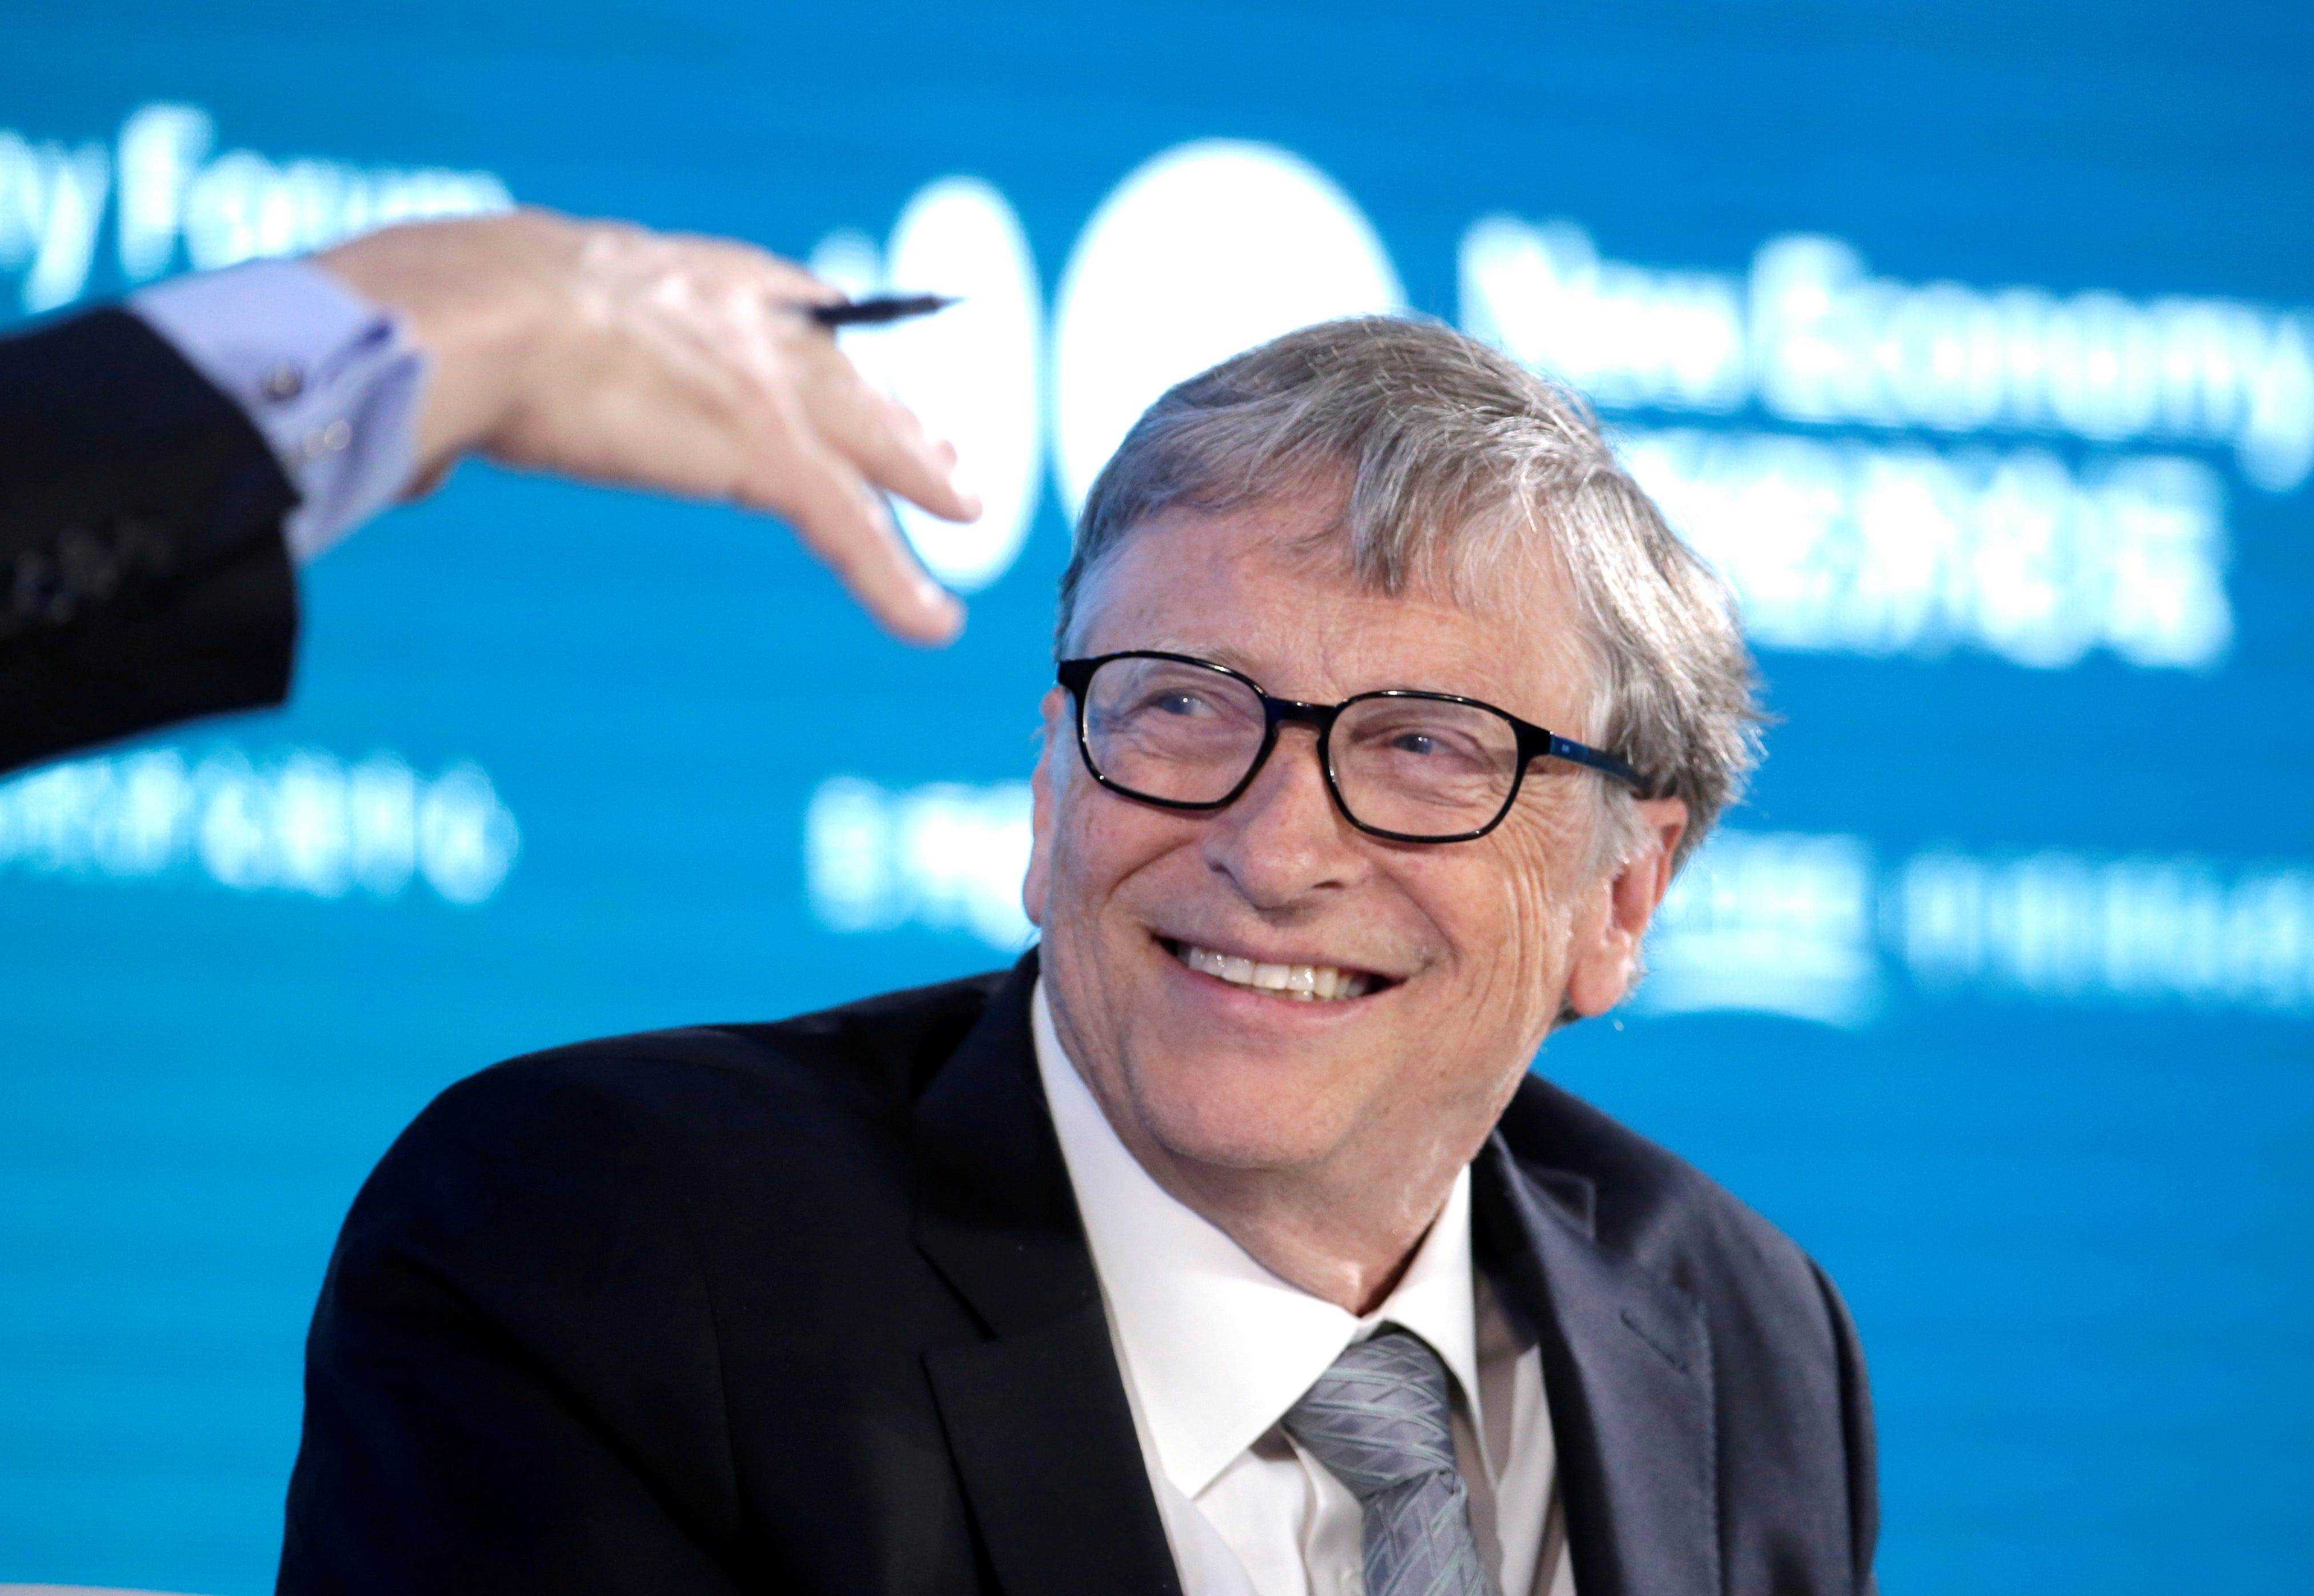 Bill Gates auf dem Podium Januar 2021.JPG